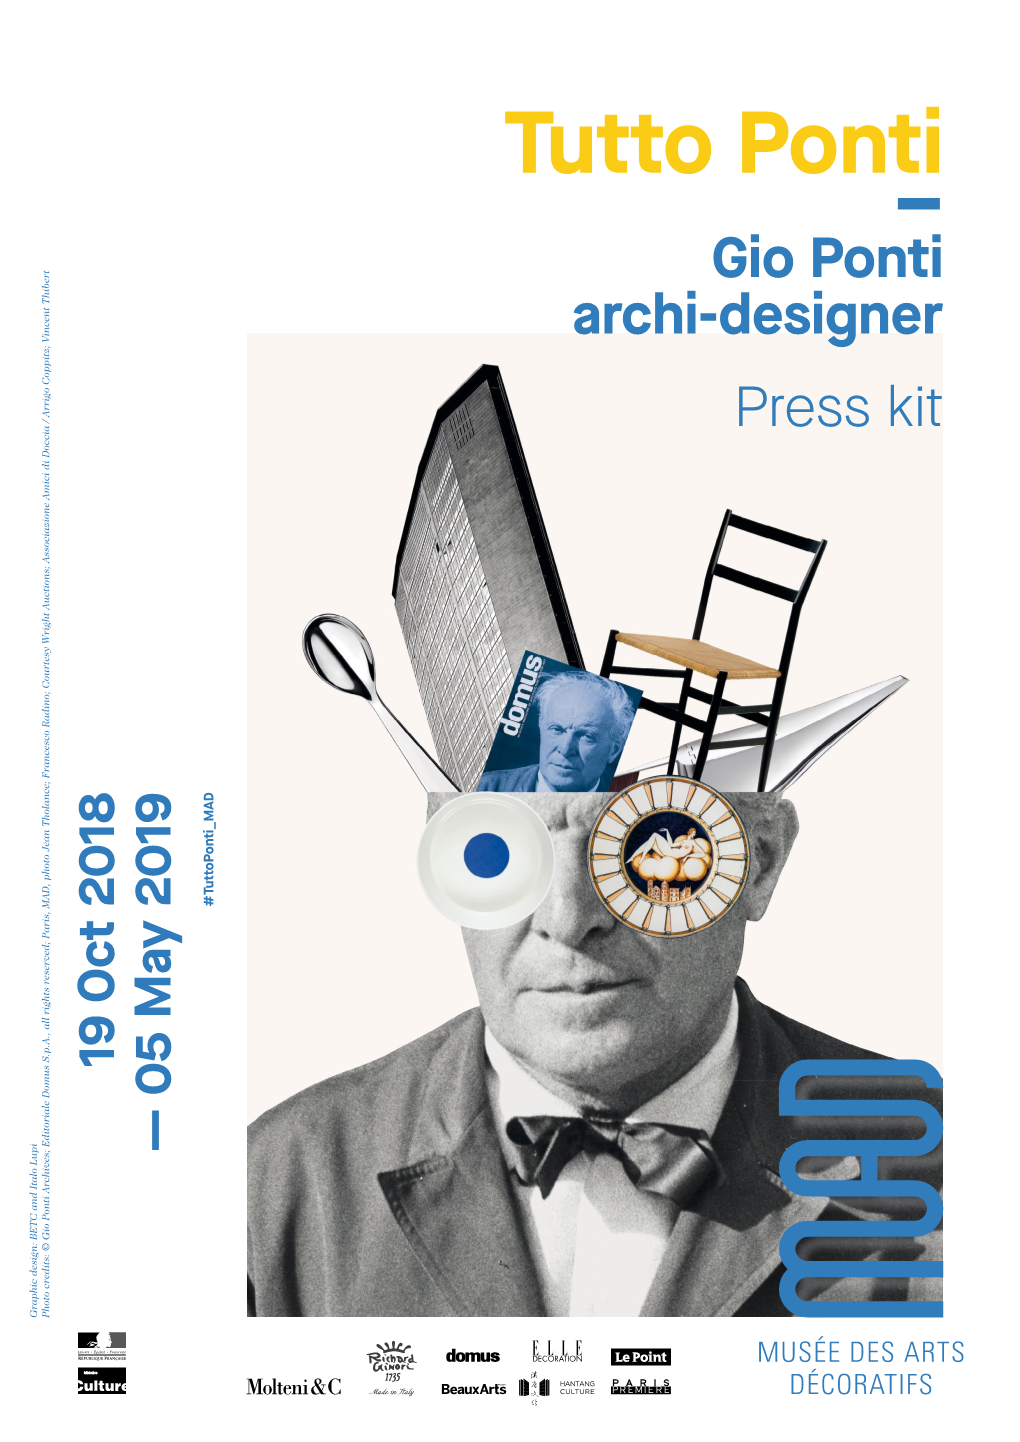 Gio Ponti Archi-Designer Press